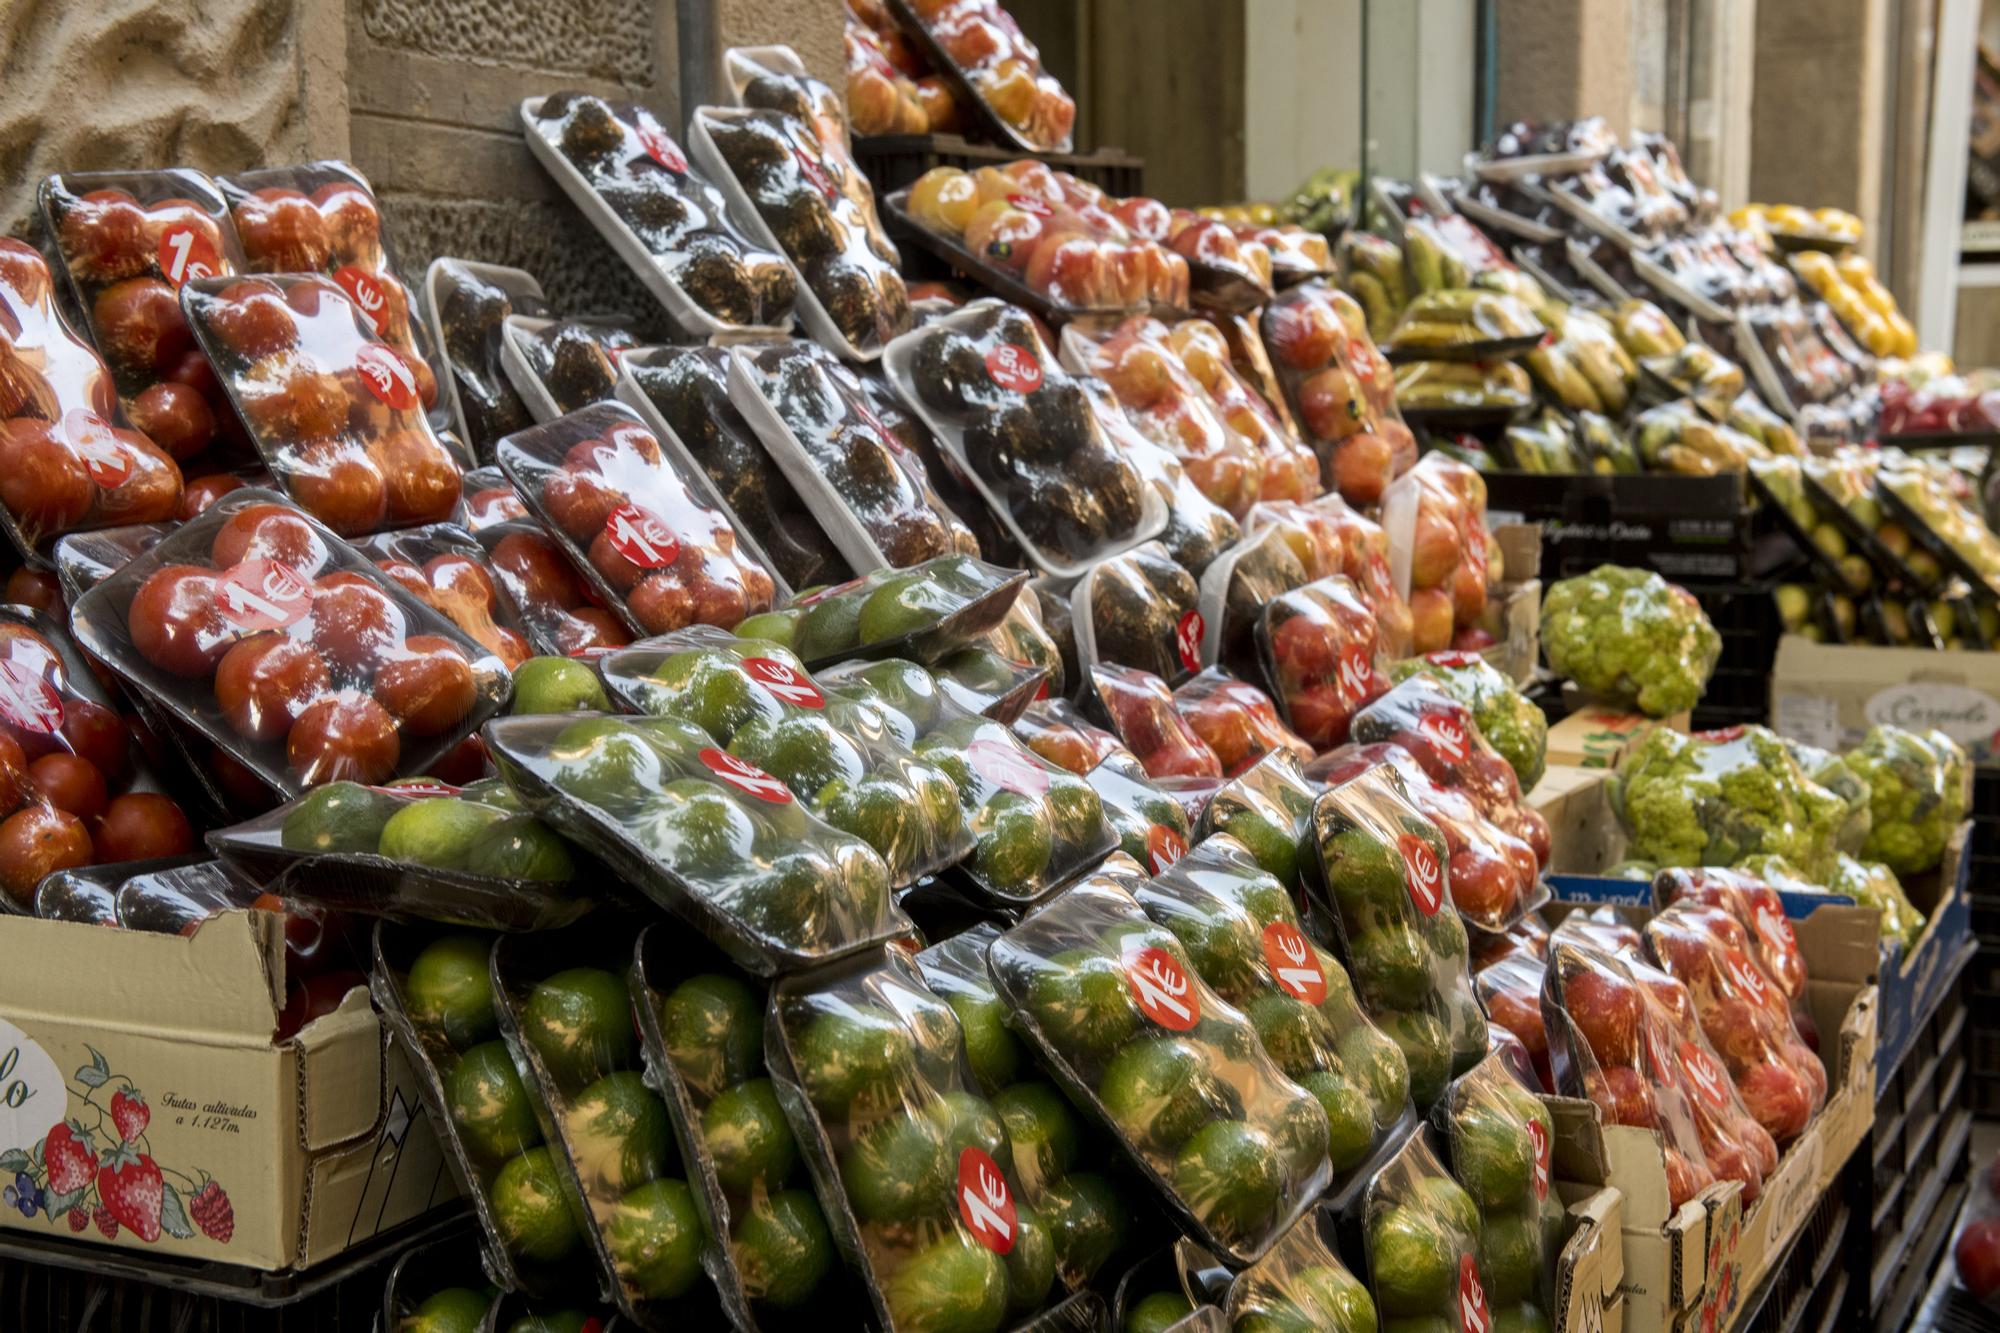 Verduras y frutas envueltas en embases de plástico en una tienda.